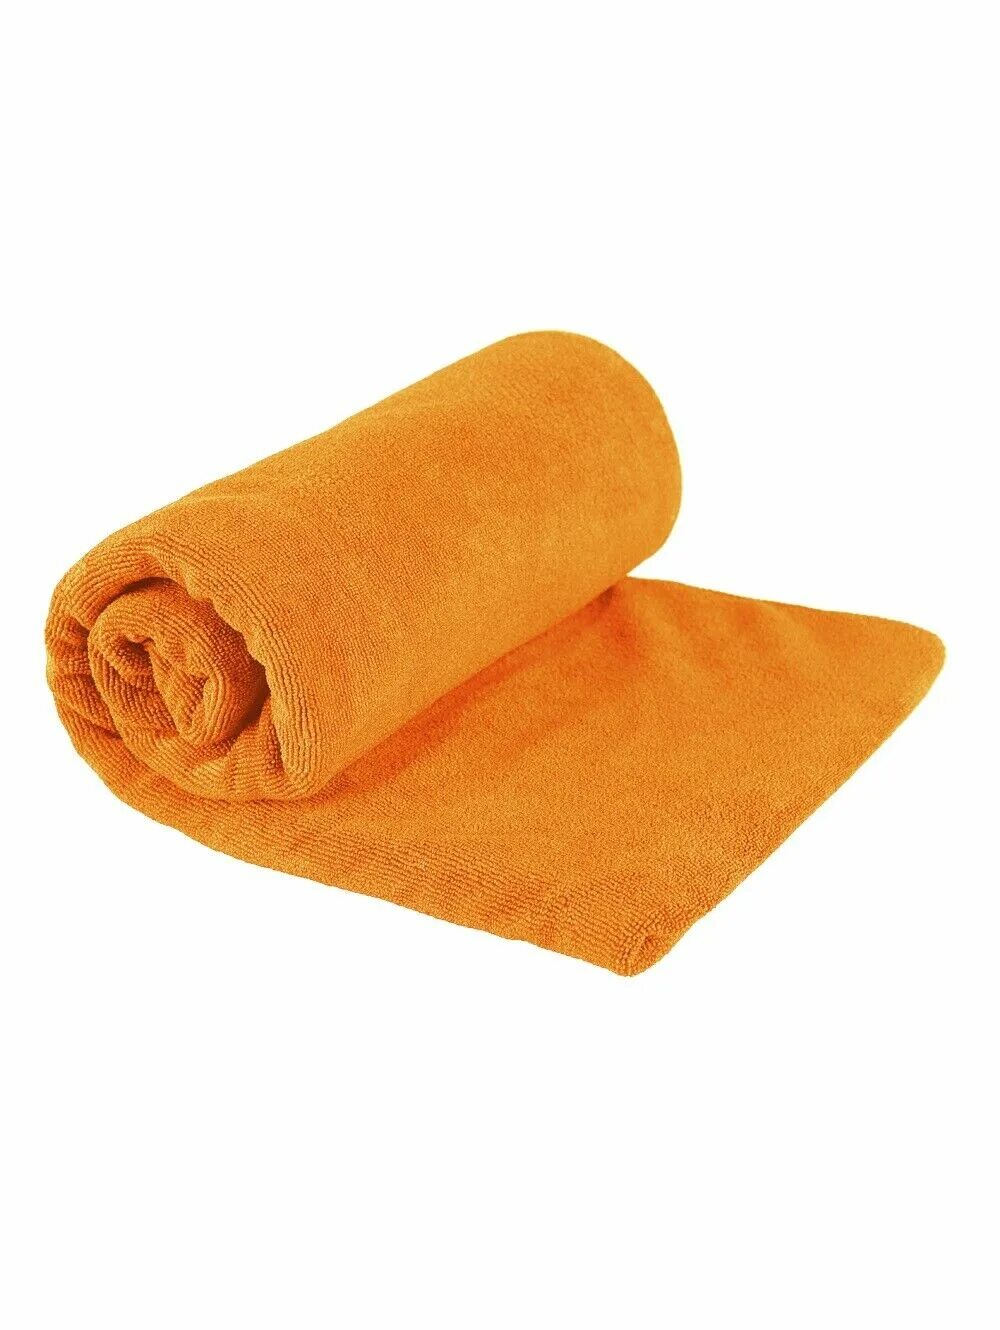 Полотенца гигиенические. Полотенце. Оранжевое полотенце. Стопка полотенец. Скрученное полотенце.